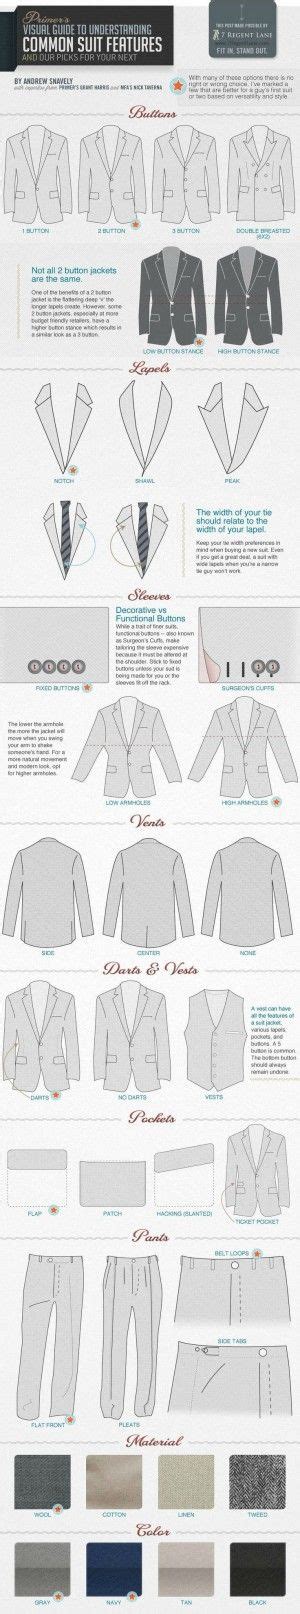 infographics     man fashion expert looksgudcom